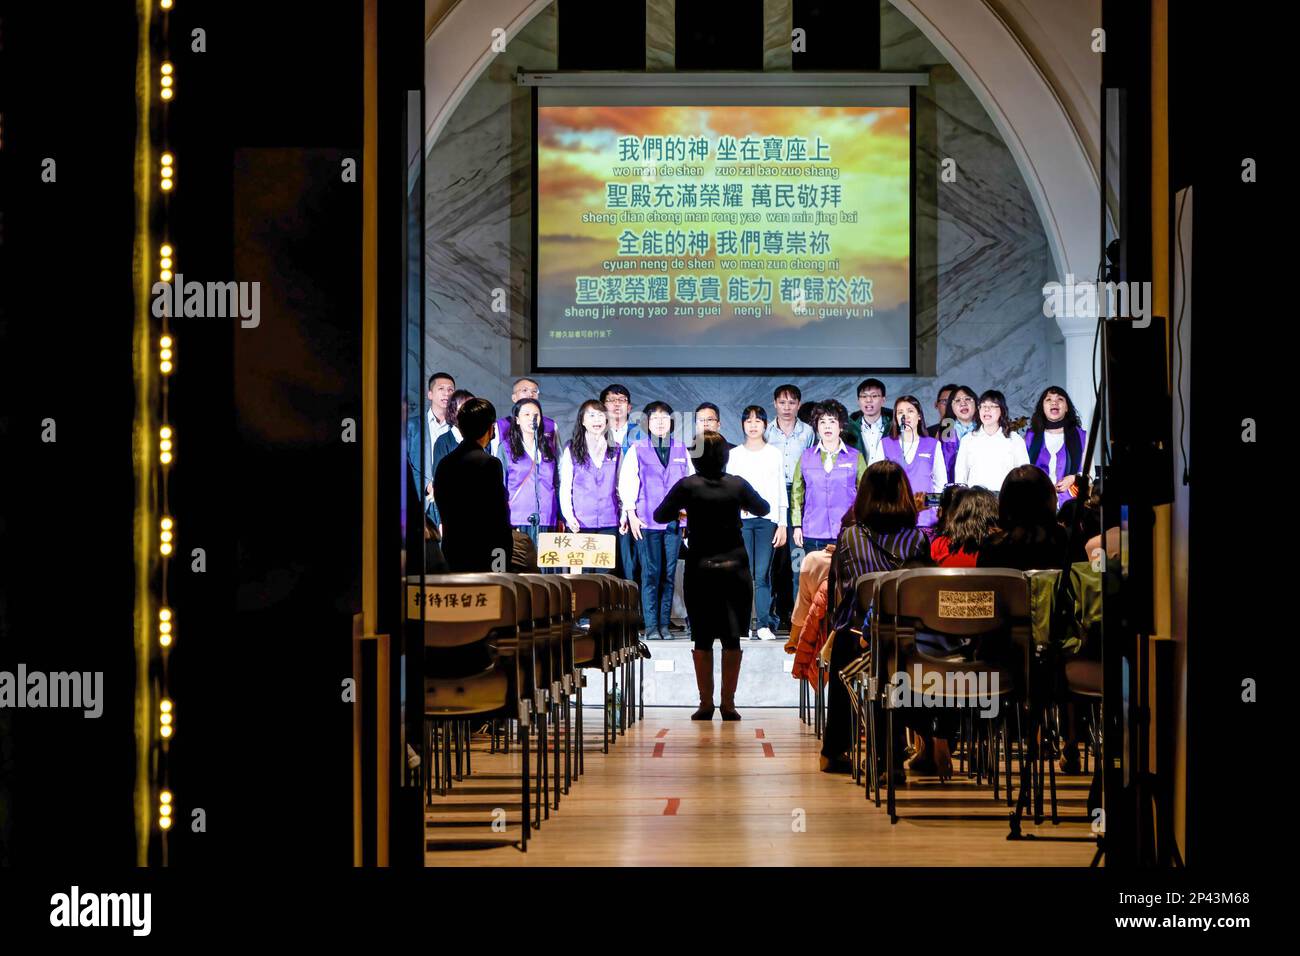 Die Leute singen in einer Abendveranstaltung in einer christlichen Kirche in Taichung. Das tägliche Leben in Taichung, der zweitgrößten Stadt Taiwans. Um mehr internationale Touristen anzulocken, kündigte die taiwanesische Regierung kürzlich an, dass sie 5000 Taiwan-Dollar (ca. 165 USD) als Teil eines Konjunkturpakets zur Unterstützung der Reisesubventionierung für Touristen bereitstellen werde. Stockfoto